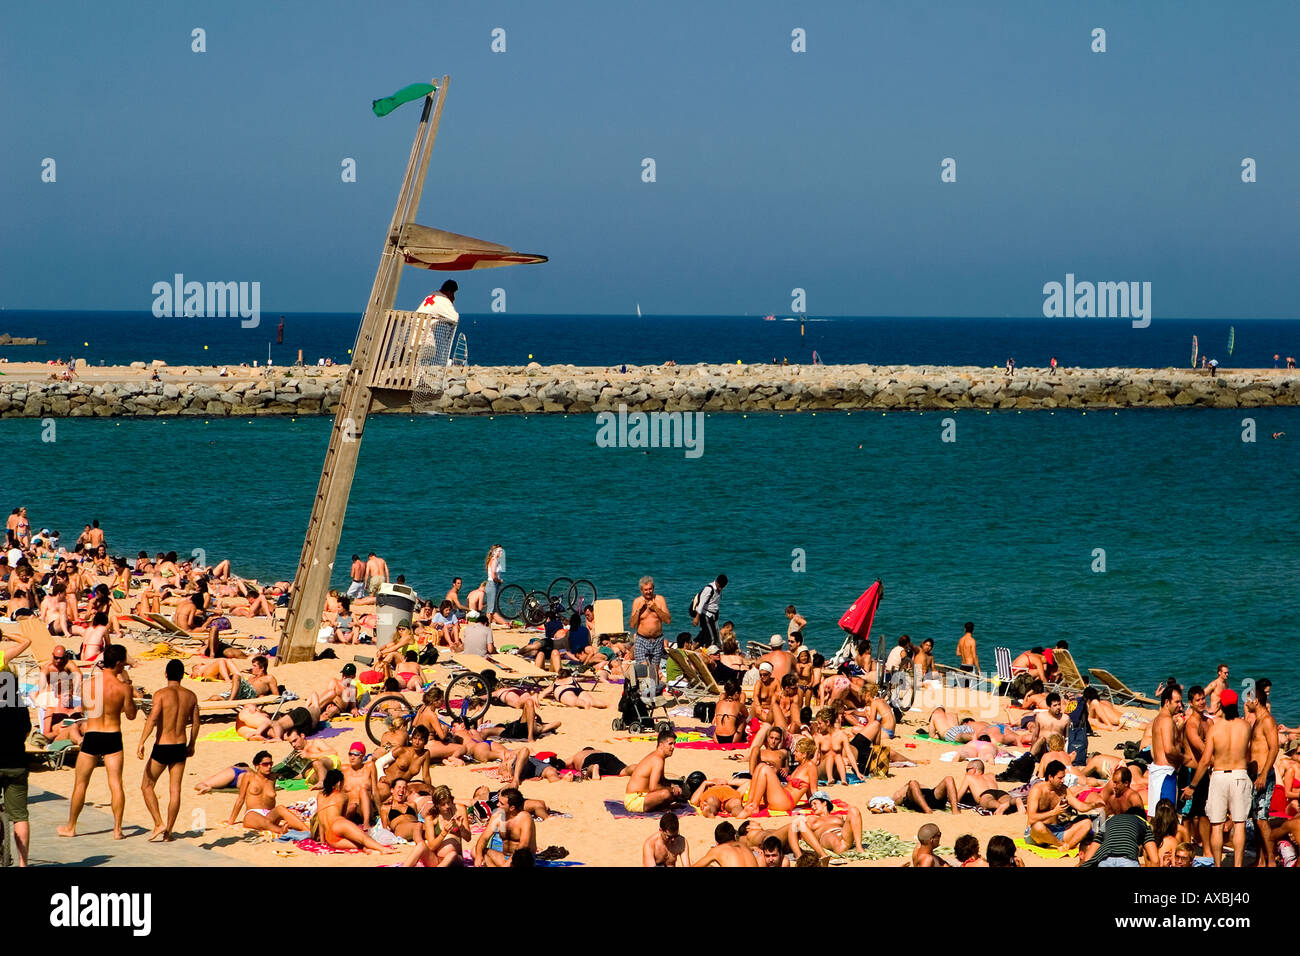 Espagne Barcelone plage Platja de la Barceloneta baywatch tower personnes plage bondée Banque D'Images